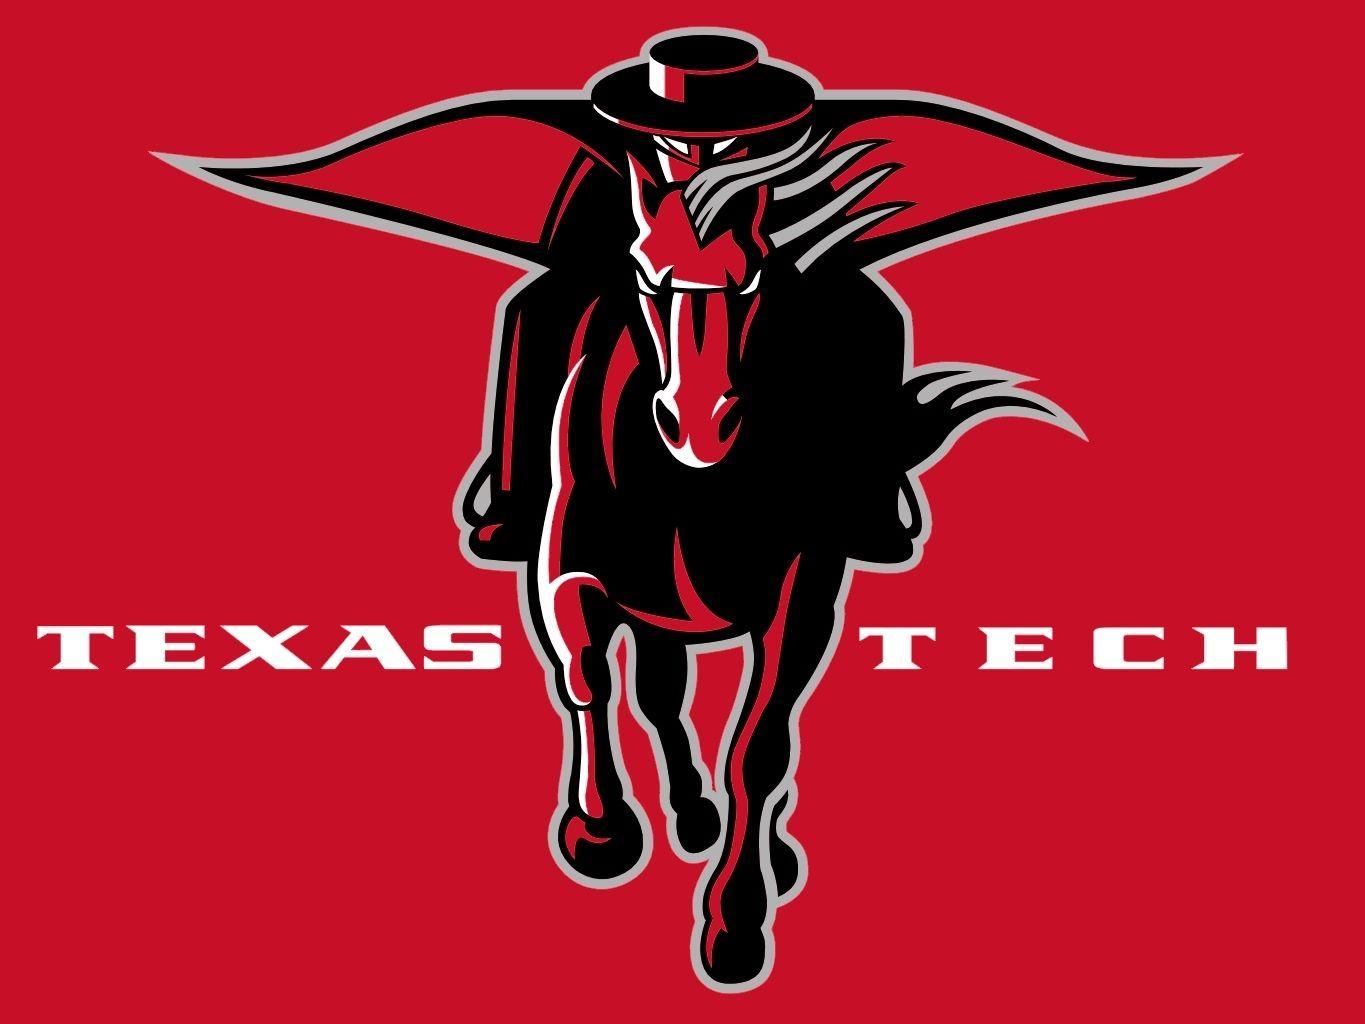 Texas Tech Red Raiders Logo - texas tech logo | Texas Tech Red Raiders | crafts | Texas tech red ...